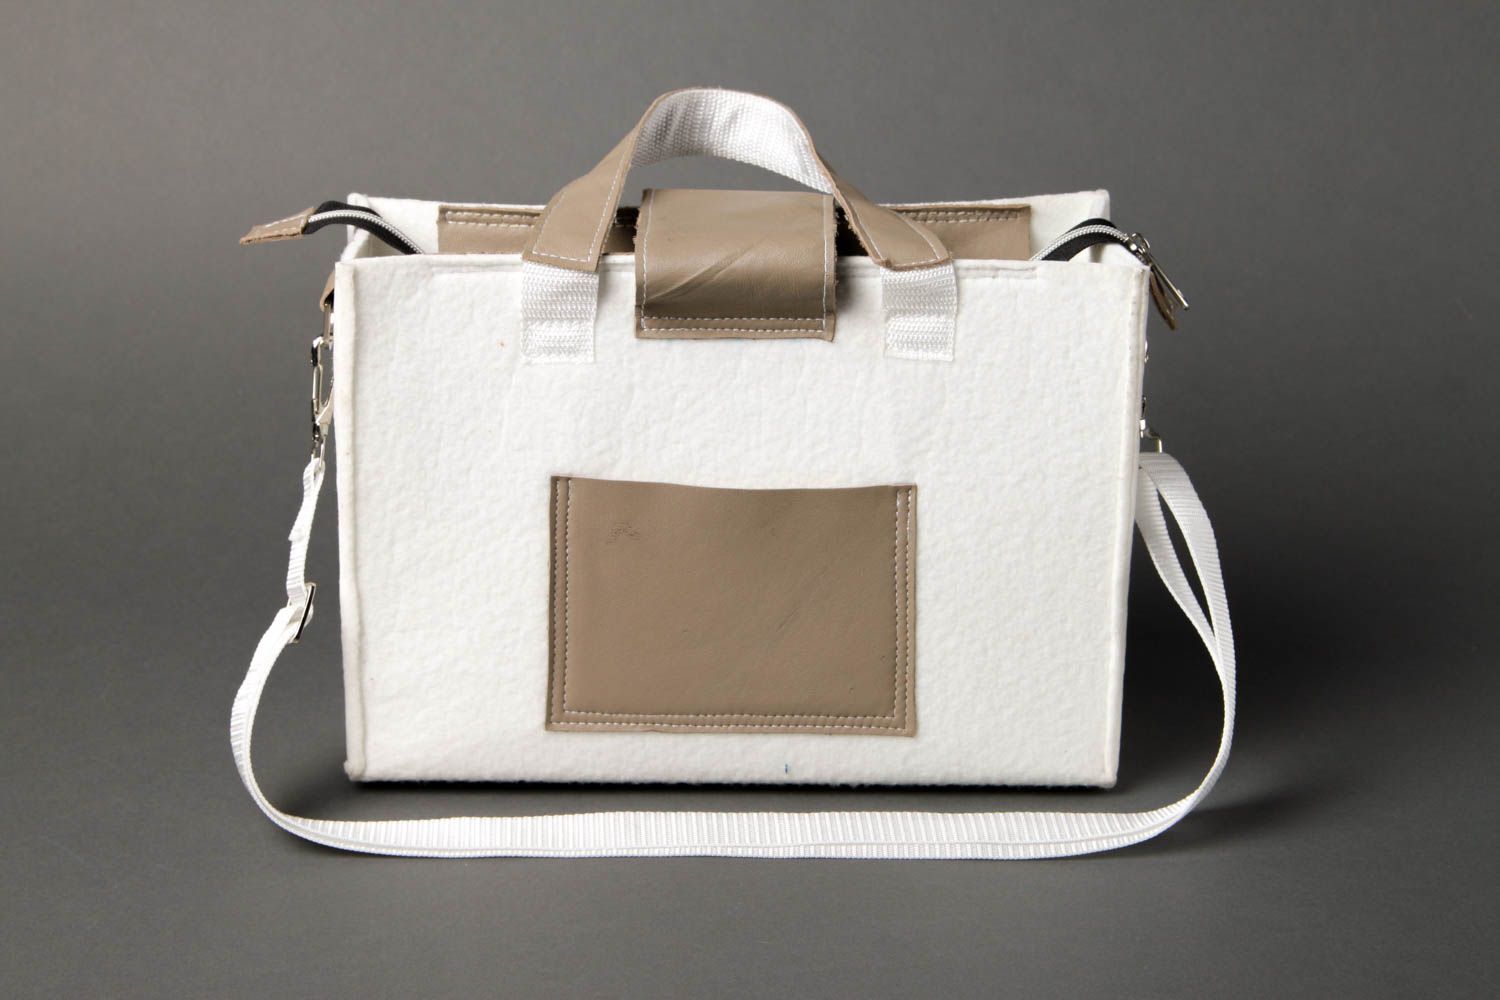 Сумка ручной работы женская сумка авторская тканевая сумка в деловом стиле фото 2